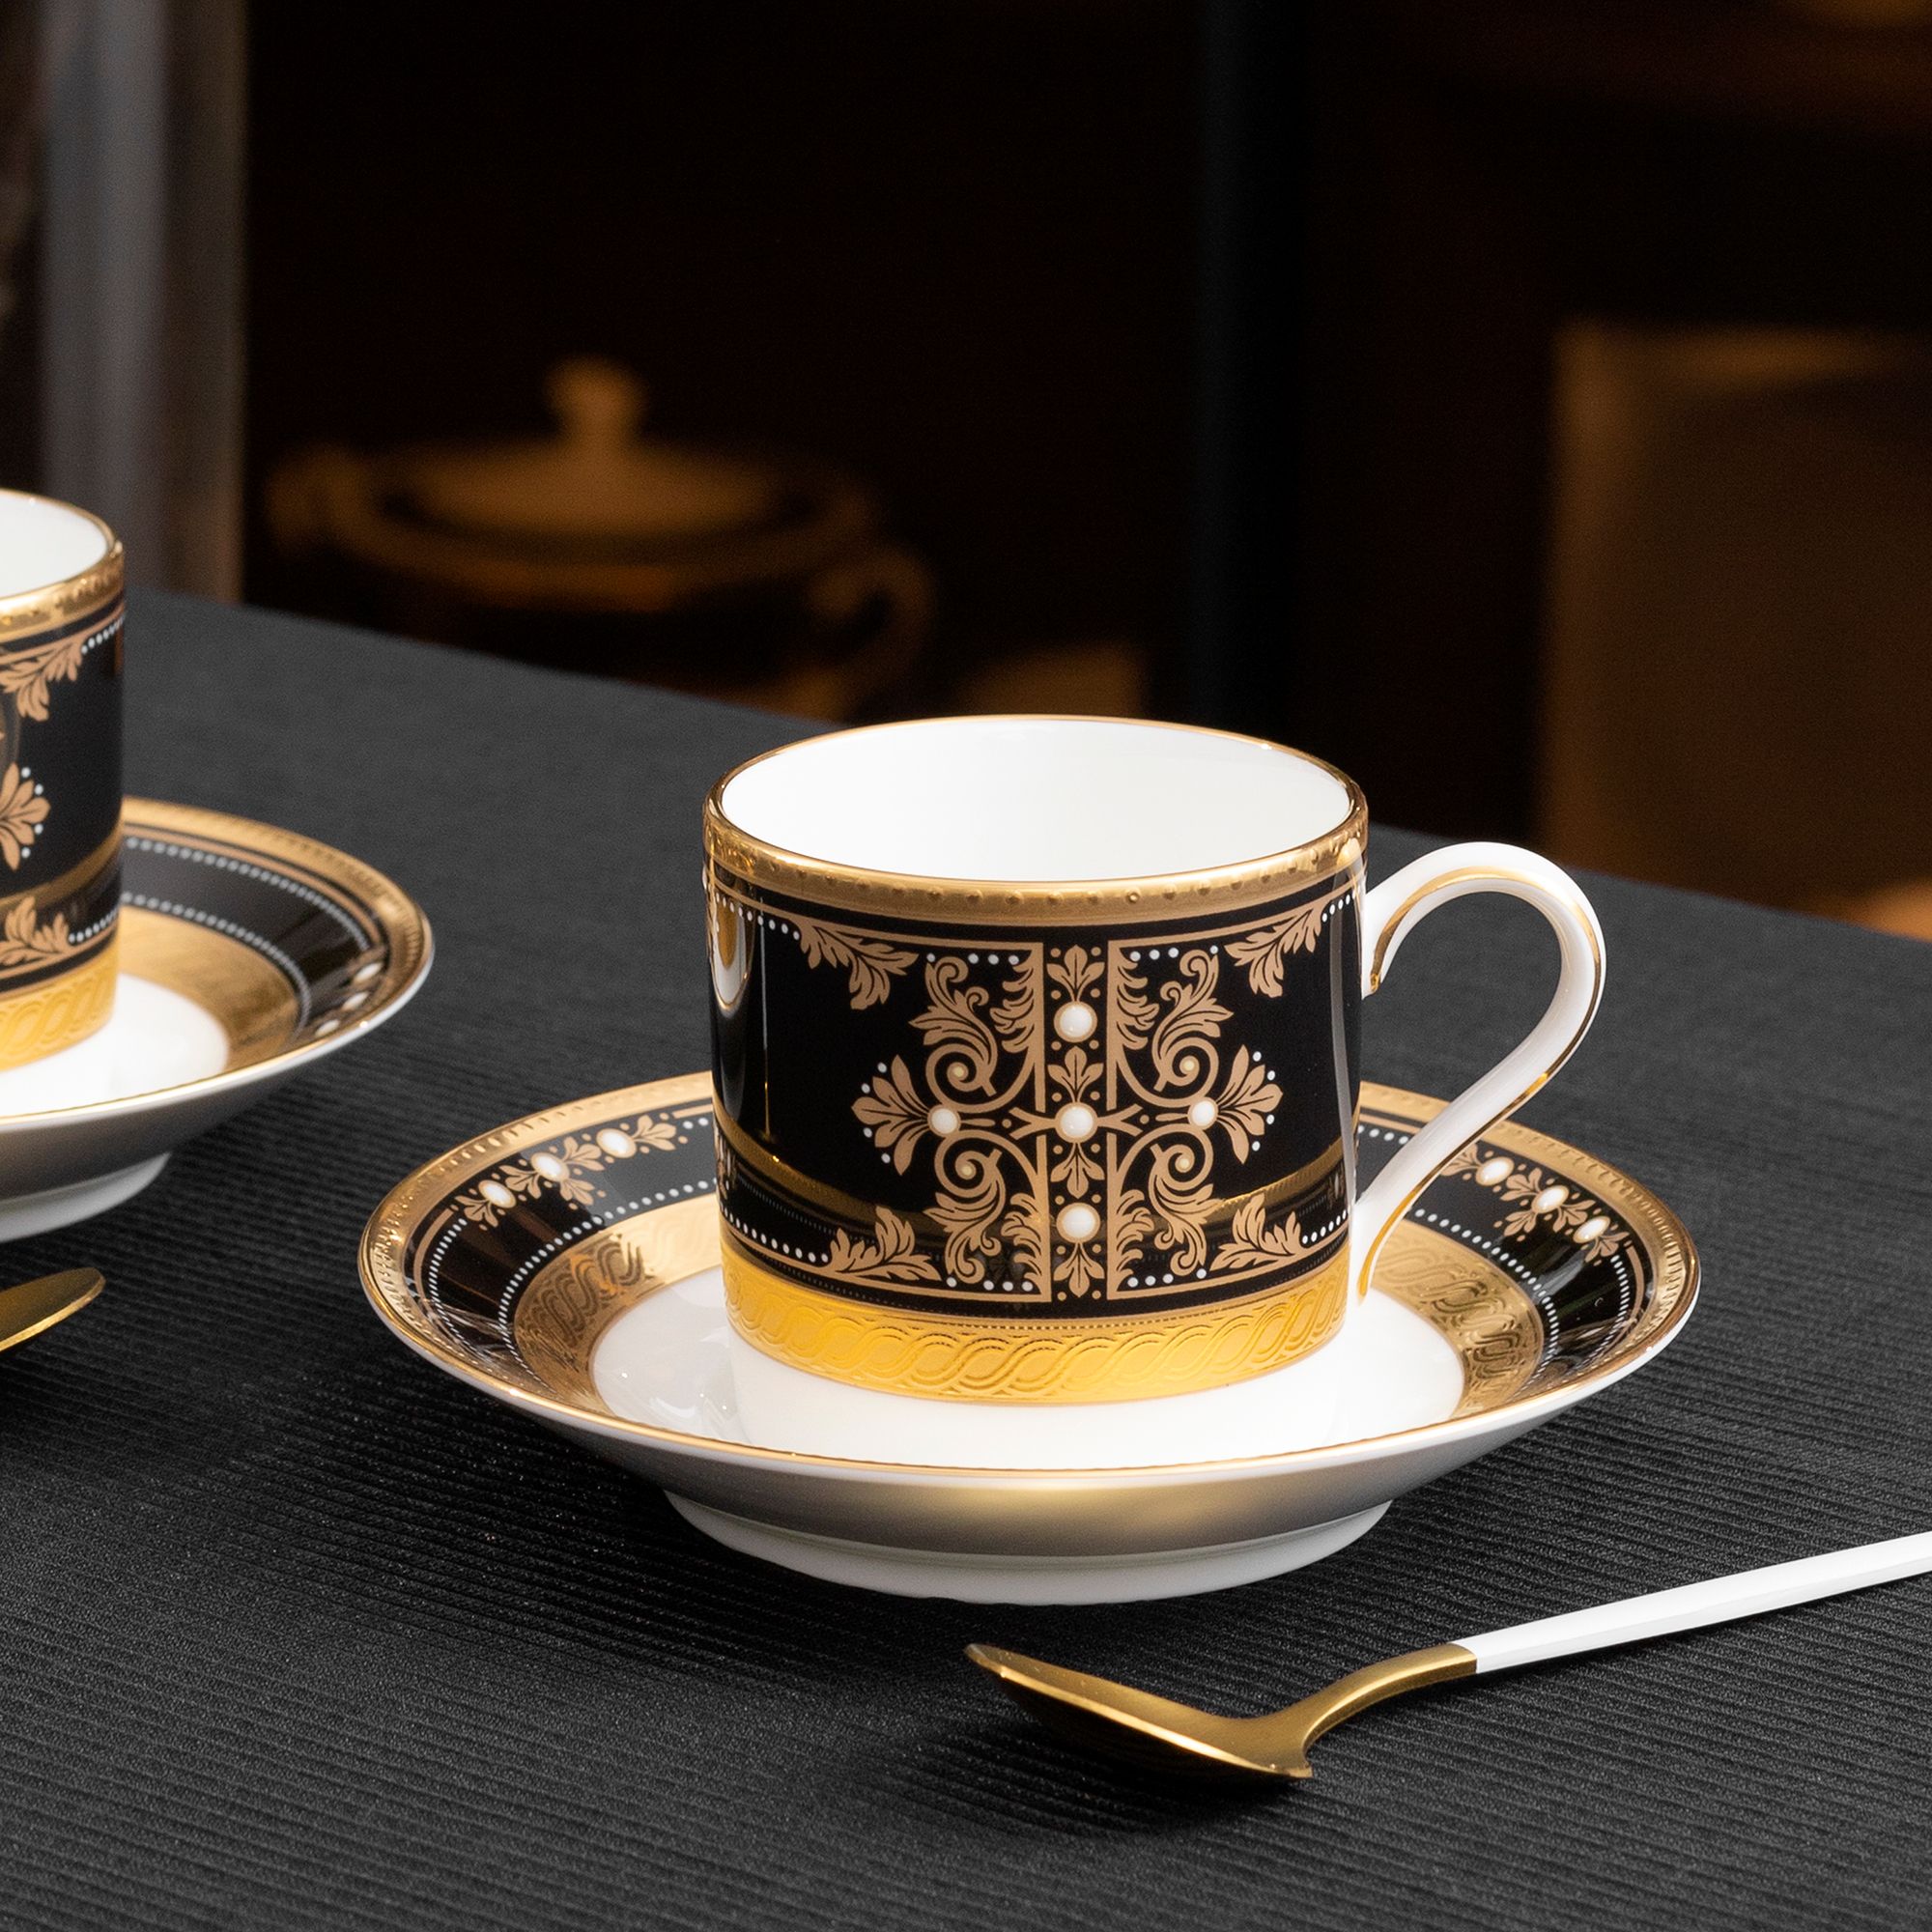  Chén trà (tách trà) nhỏ dung tích 125ml kèm đĩa lót sứ xương Nhật Bản | Evening Majesty 4818J-T59881 